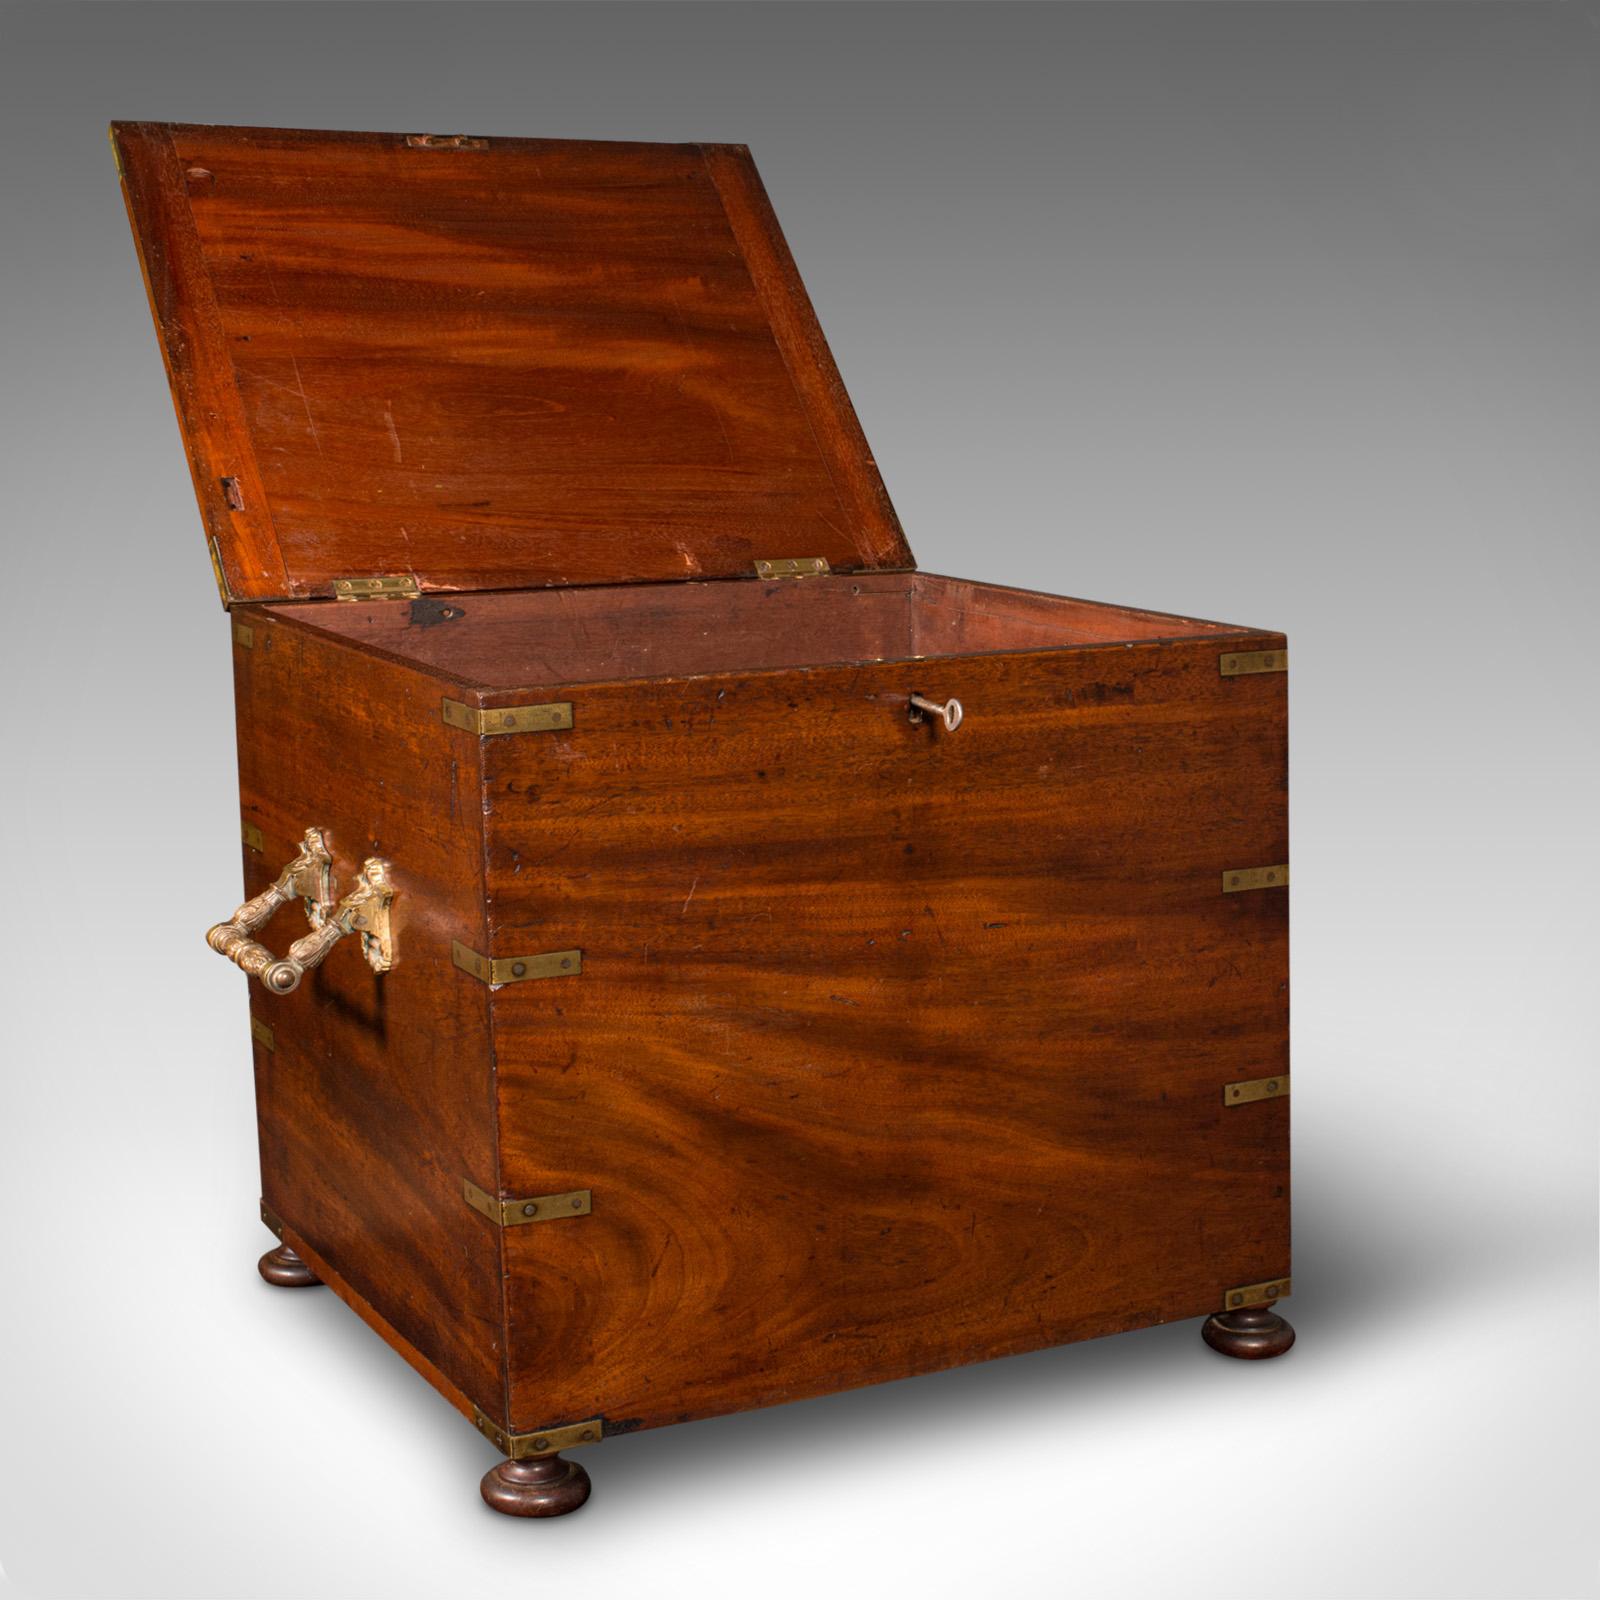 Dies ist ein antikes Kampagnen-Cellarette. Eine englische Aufbewahrungsbox aus Mahagoni und Messing aus der Mitte des viktorianischen Zeitalters, um 1850.

Beeindruckende Proportionen und eine hochwertige Verarbeitung und Erscheinung
Zeigt eine